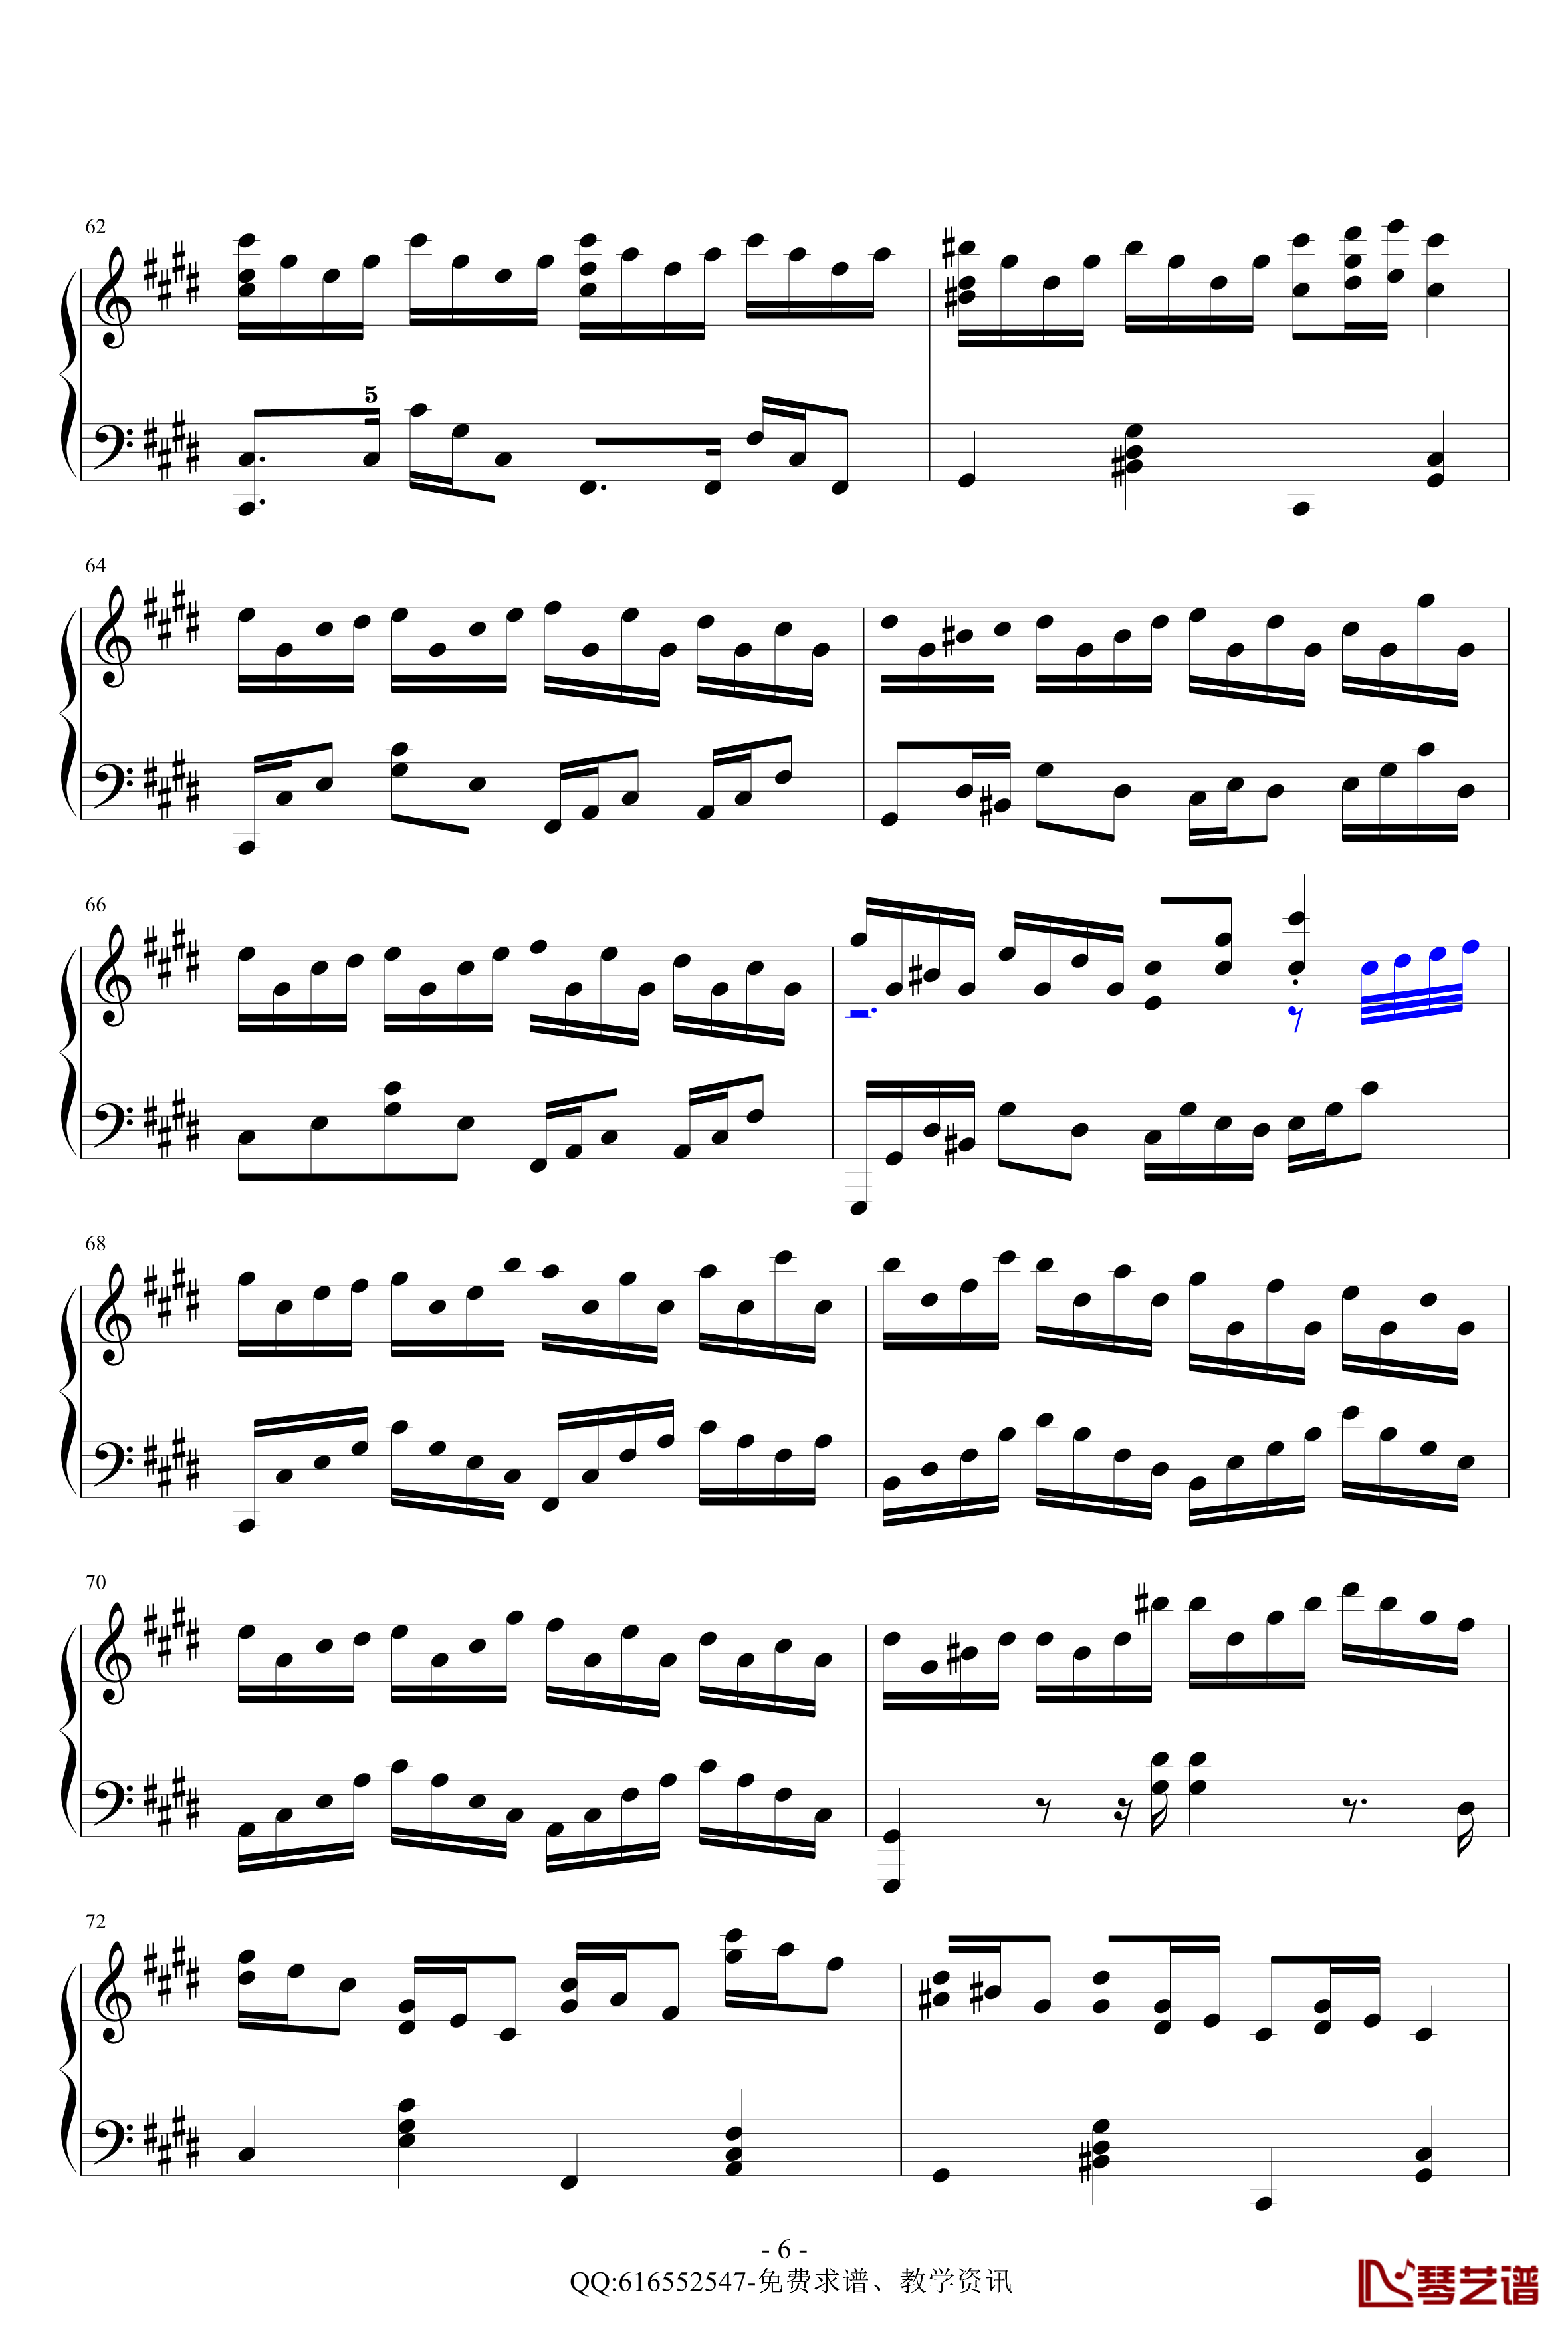 克罗地亚狂想曲钢琴谱-精致版-金龙鱼170427-马克西姆-Maksim·Mrvica6